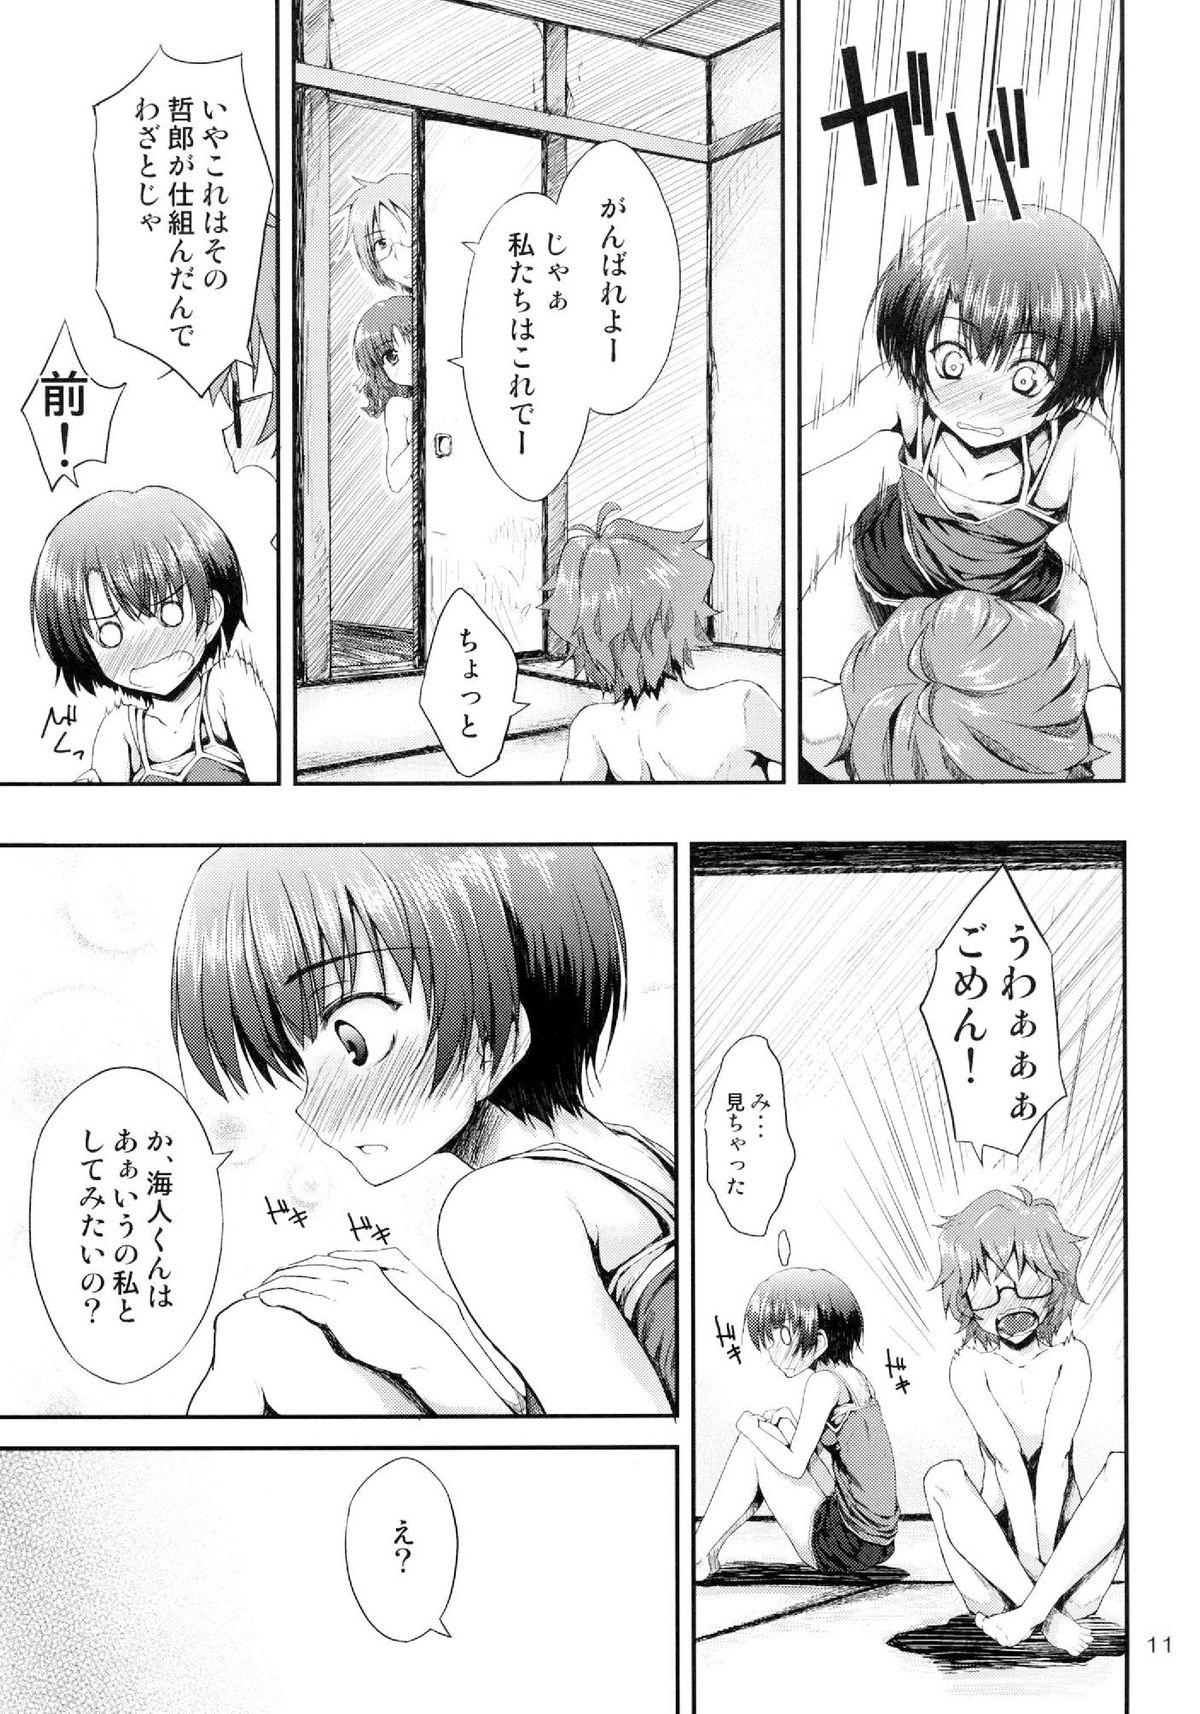 Gritona Ano Natsu wo Mou Ichido - Ano natsu de matteru Cheating - Page 11